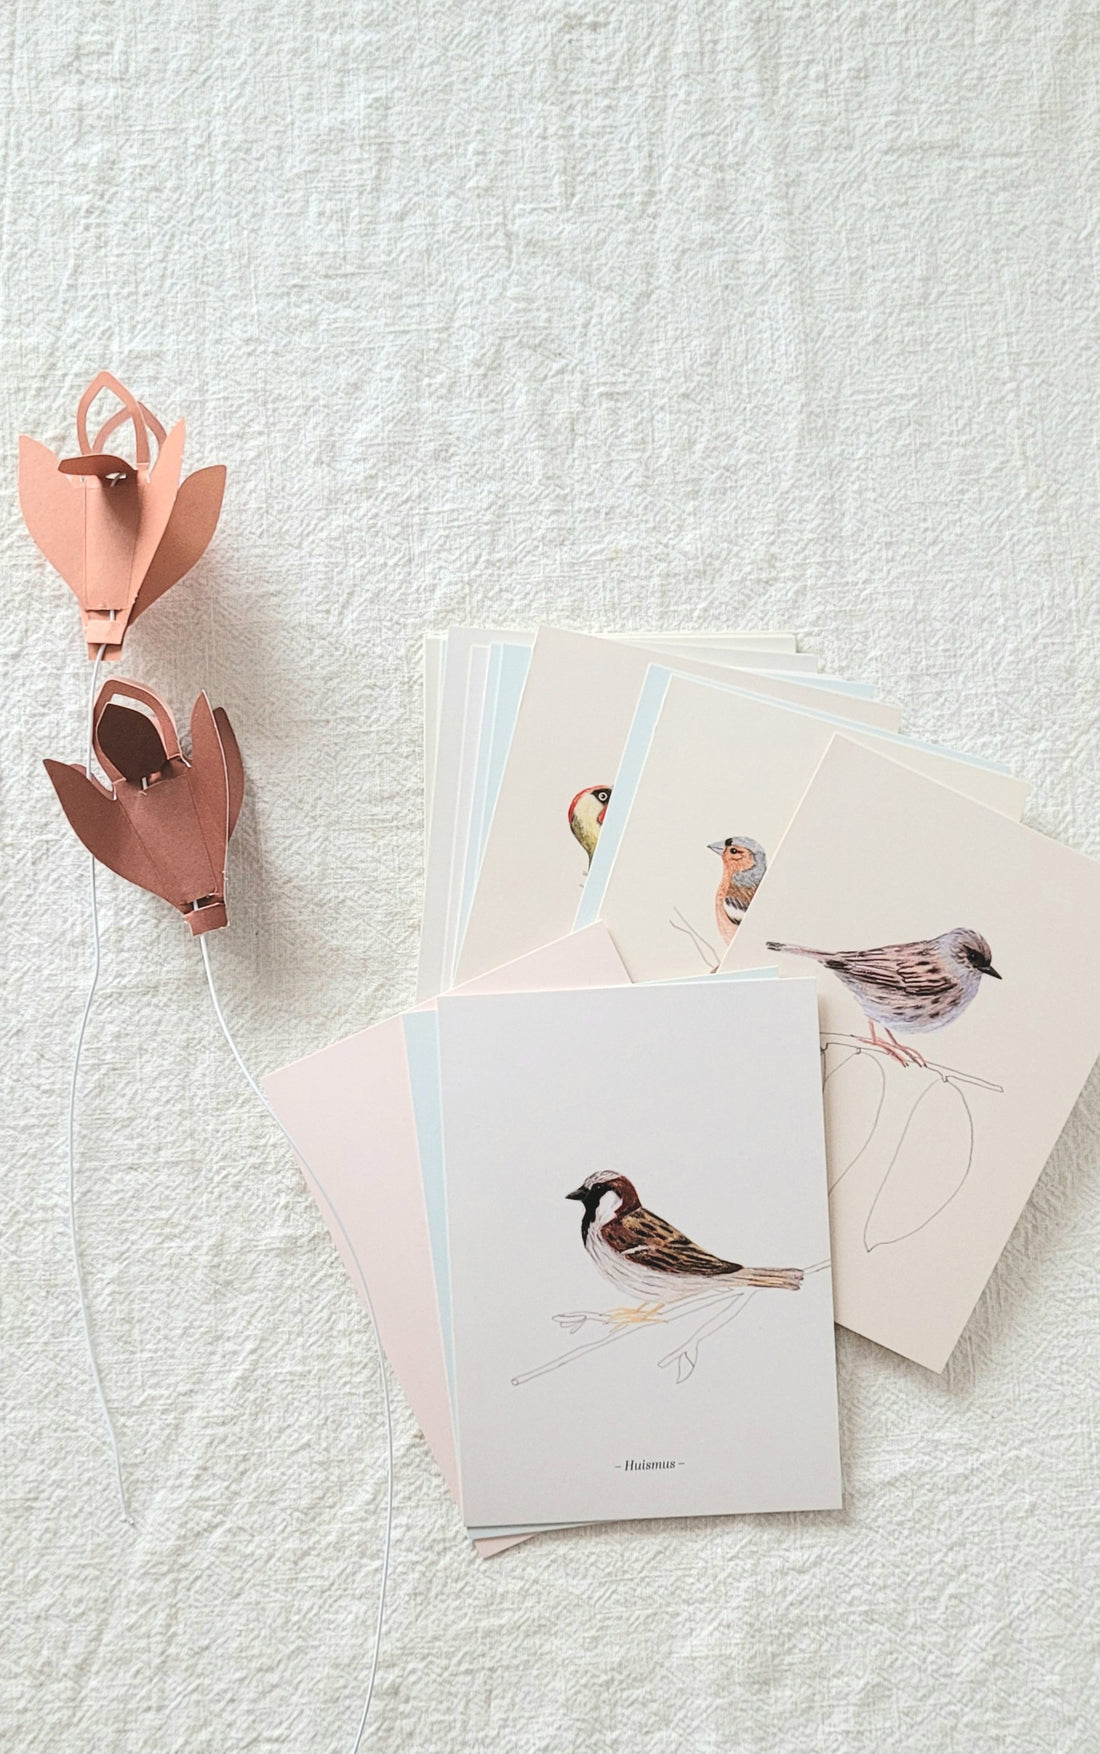 Bird card book - 32 pieces